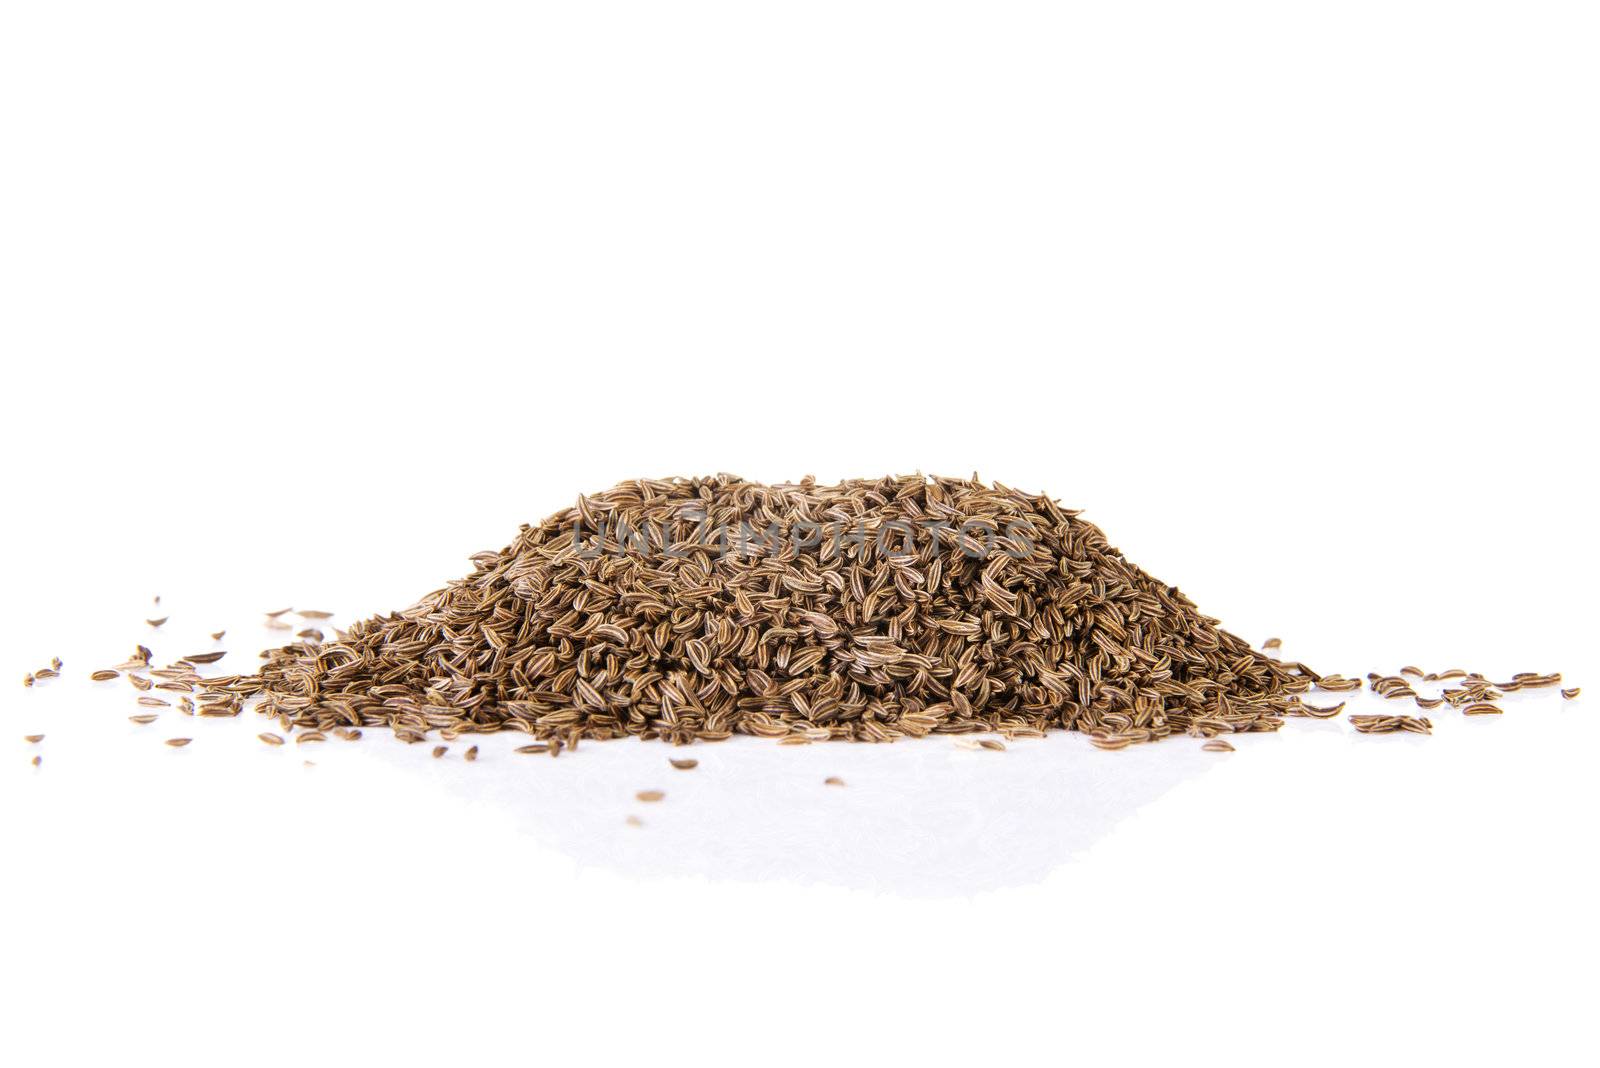 Pile of cumin seeds